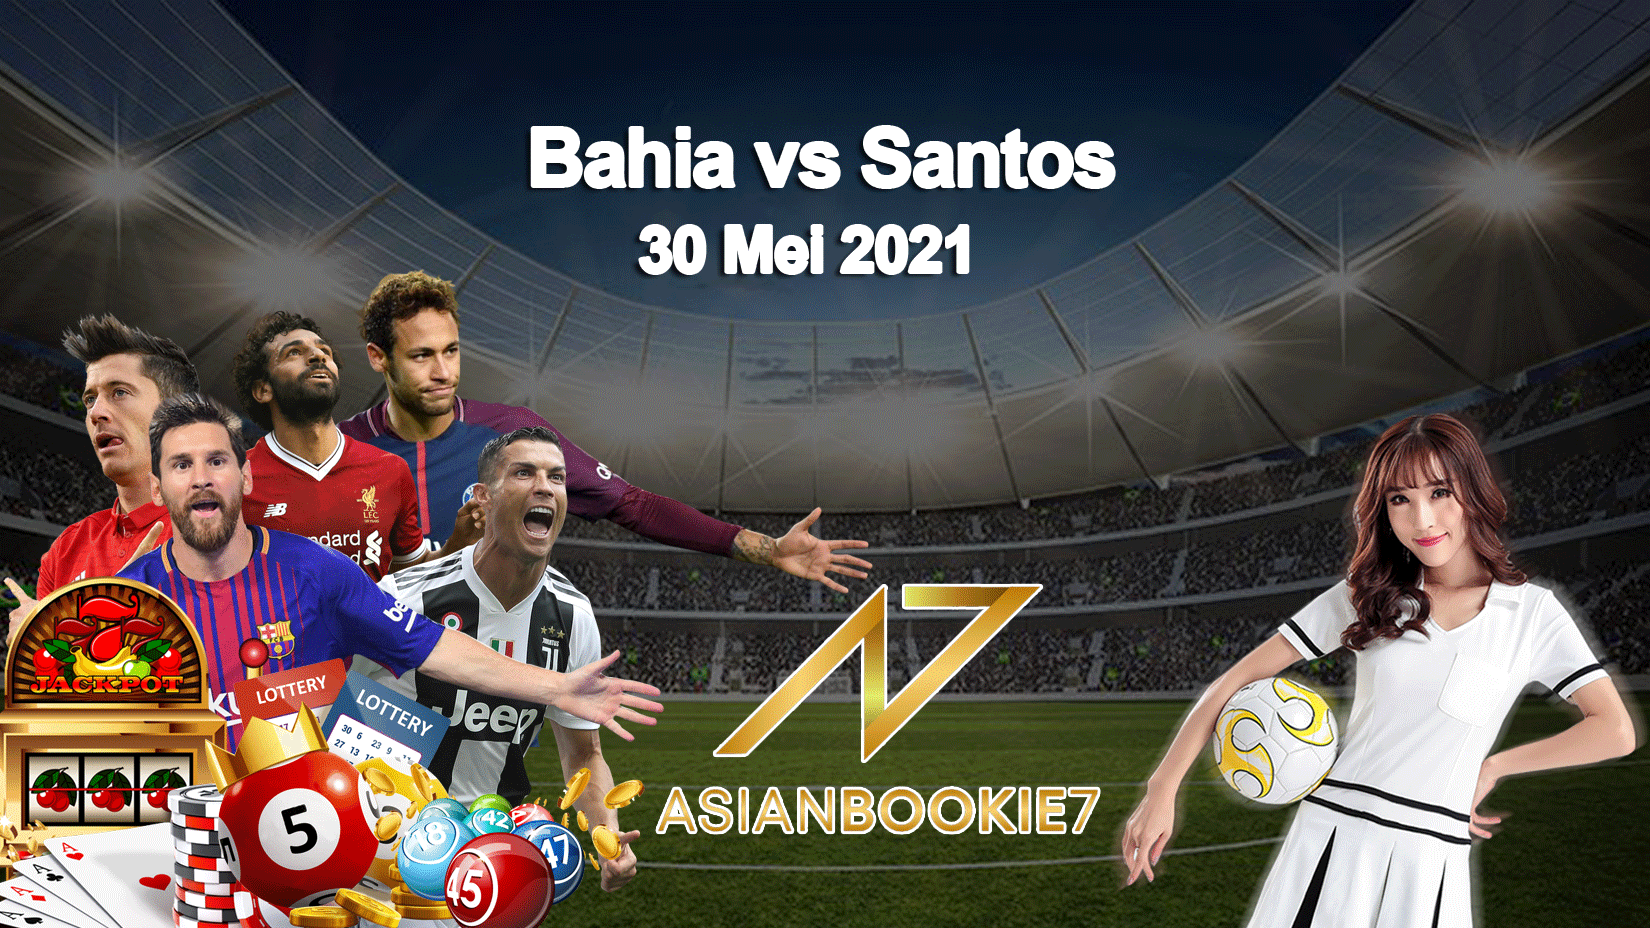 Prediksi Bahia vs Santos 30 Mei 2021